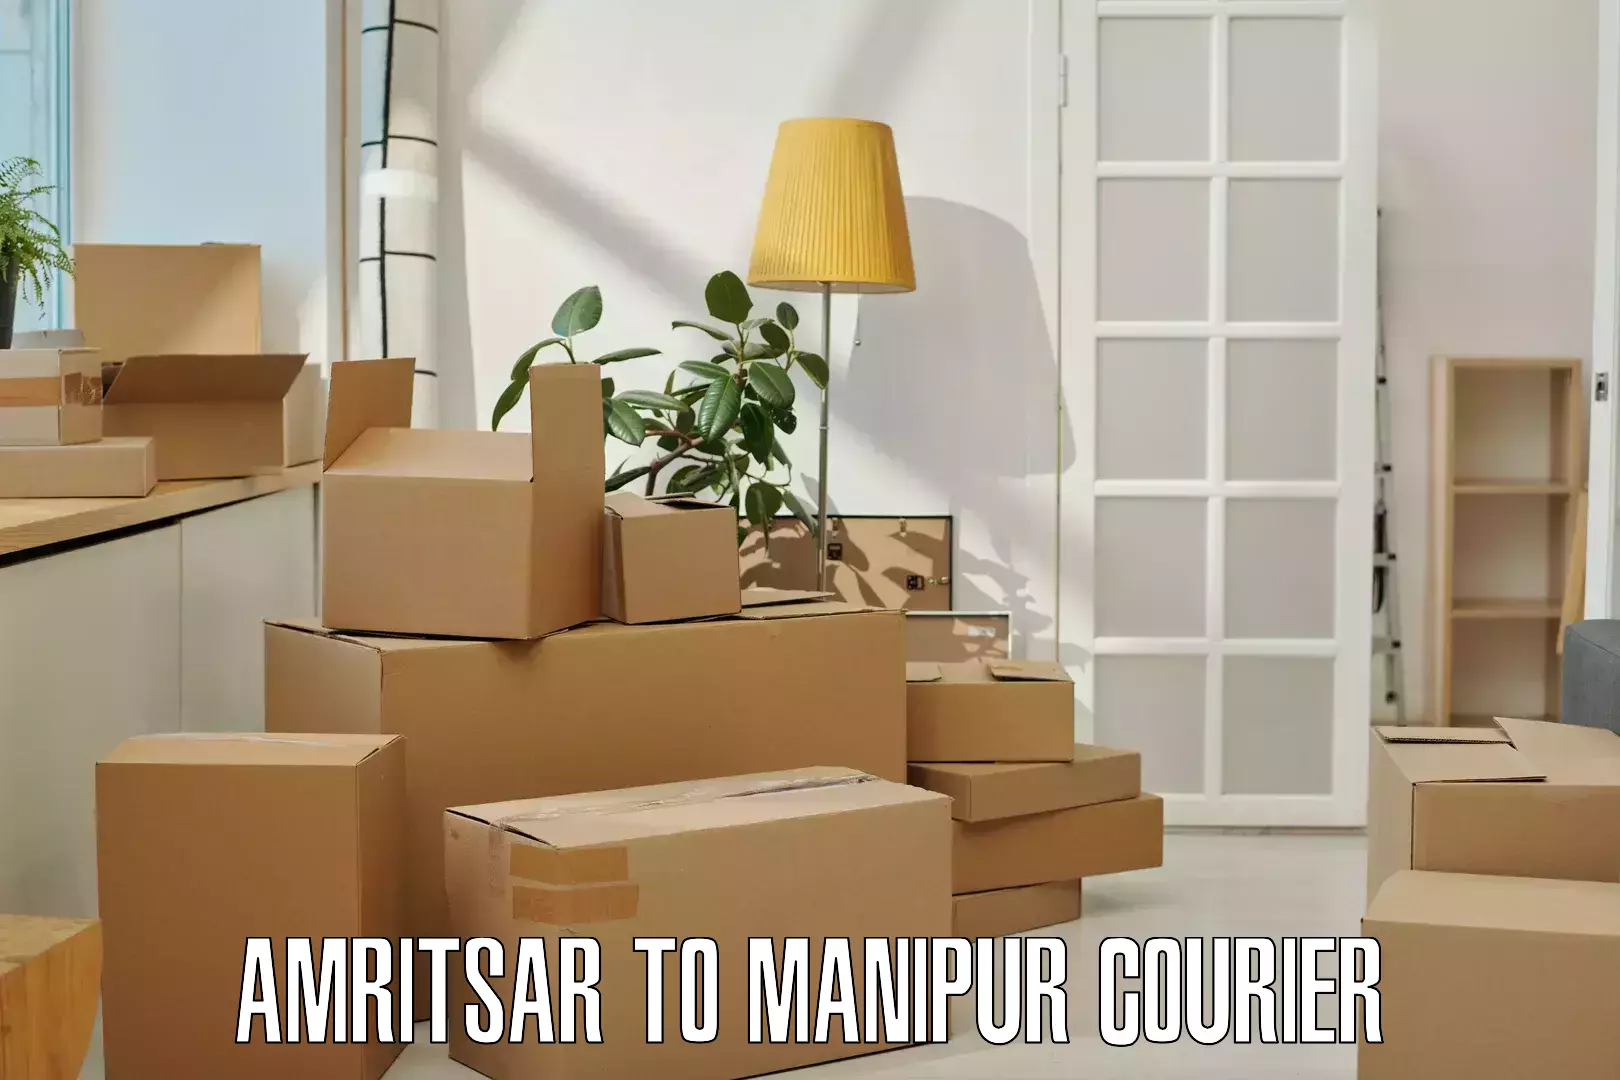 Holiday shipping services Amritsar to IIIT Senapati